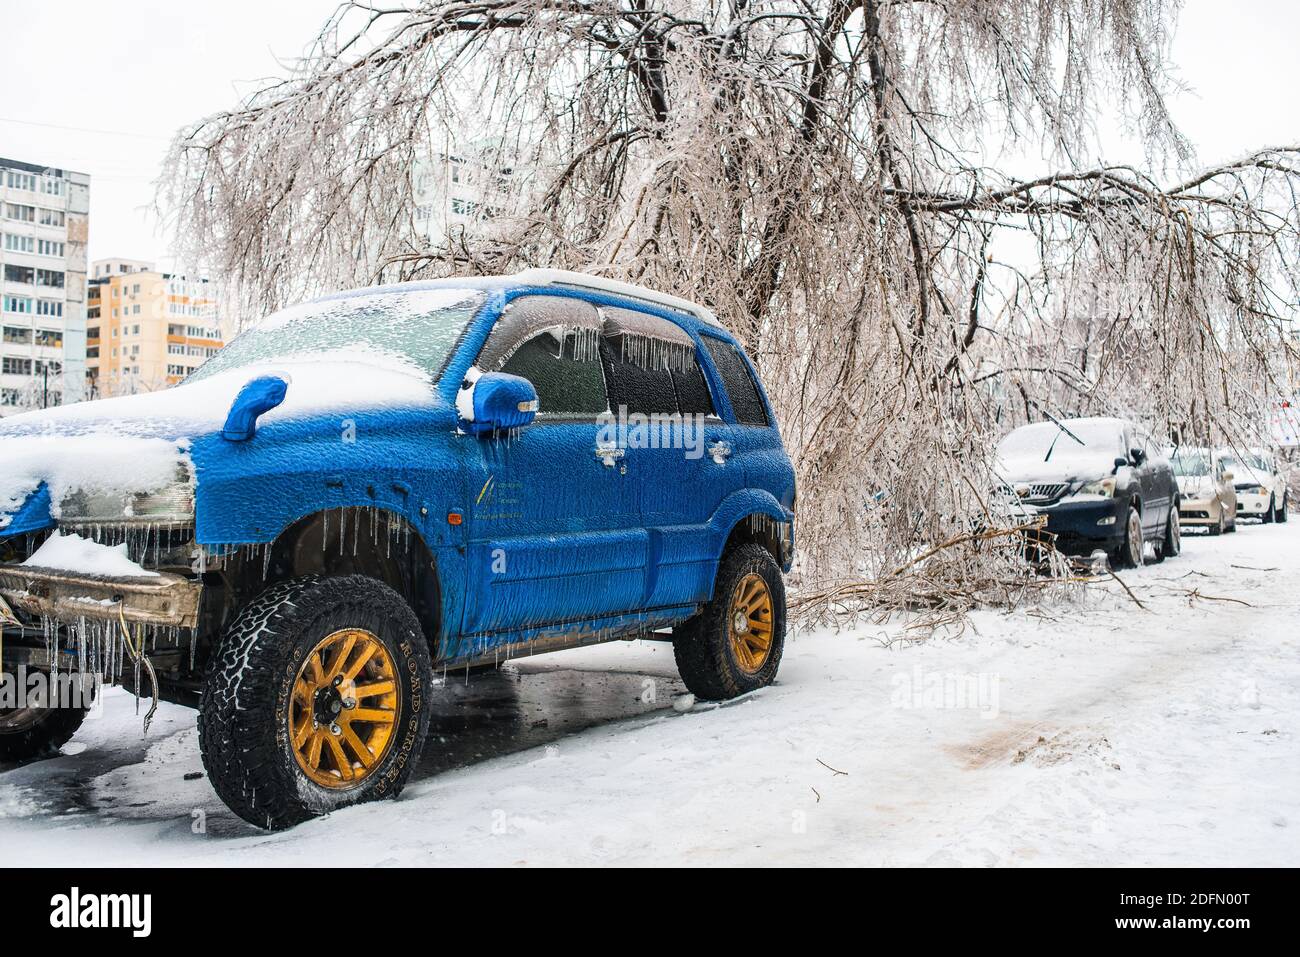 Blaues Auto bedeckt mit Eis und Eiszapfen nach kaltem Regen. Bäume, die mit Eis bedeckt sind und zu Boden gebogen sind. Stadt im Winter. Eissturmzyklon. Stockfoto